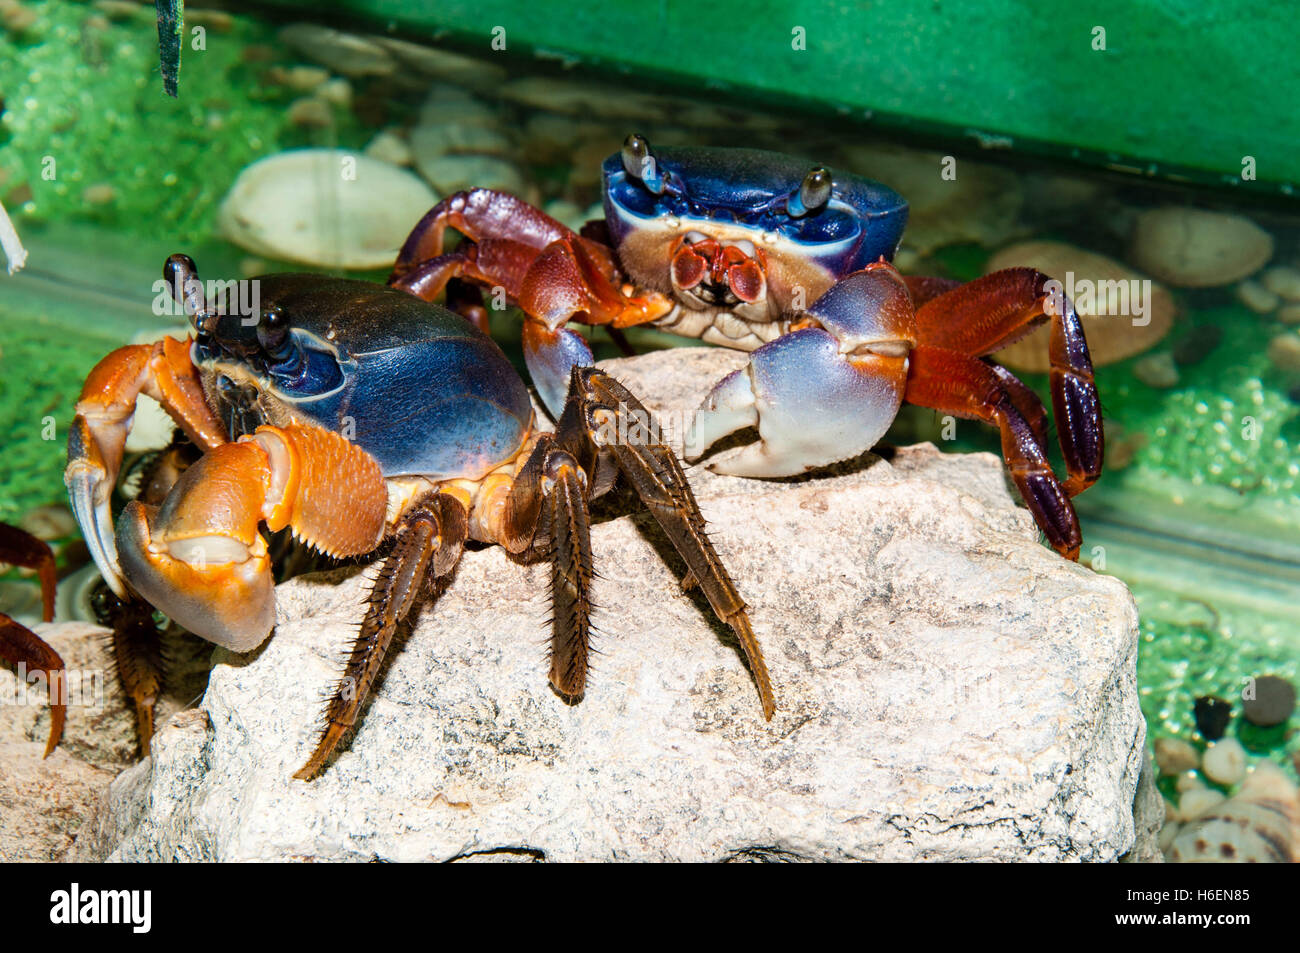 Le Crabe D'arc-en-ciel Se Repose Dans L'aquarium Image stock - Image du  crabe, normal: 99101013